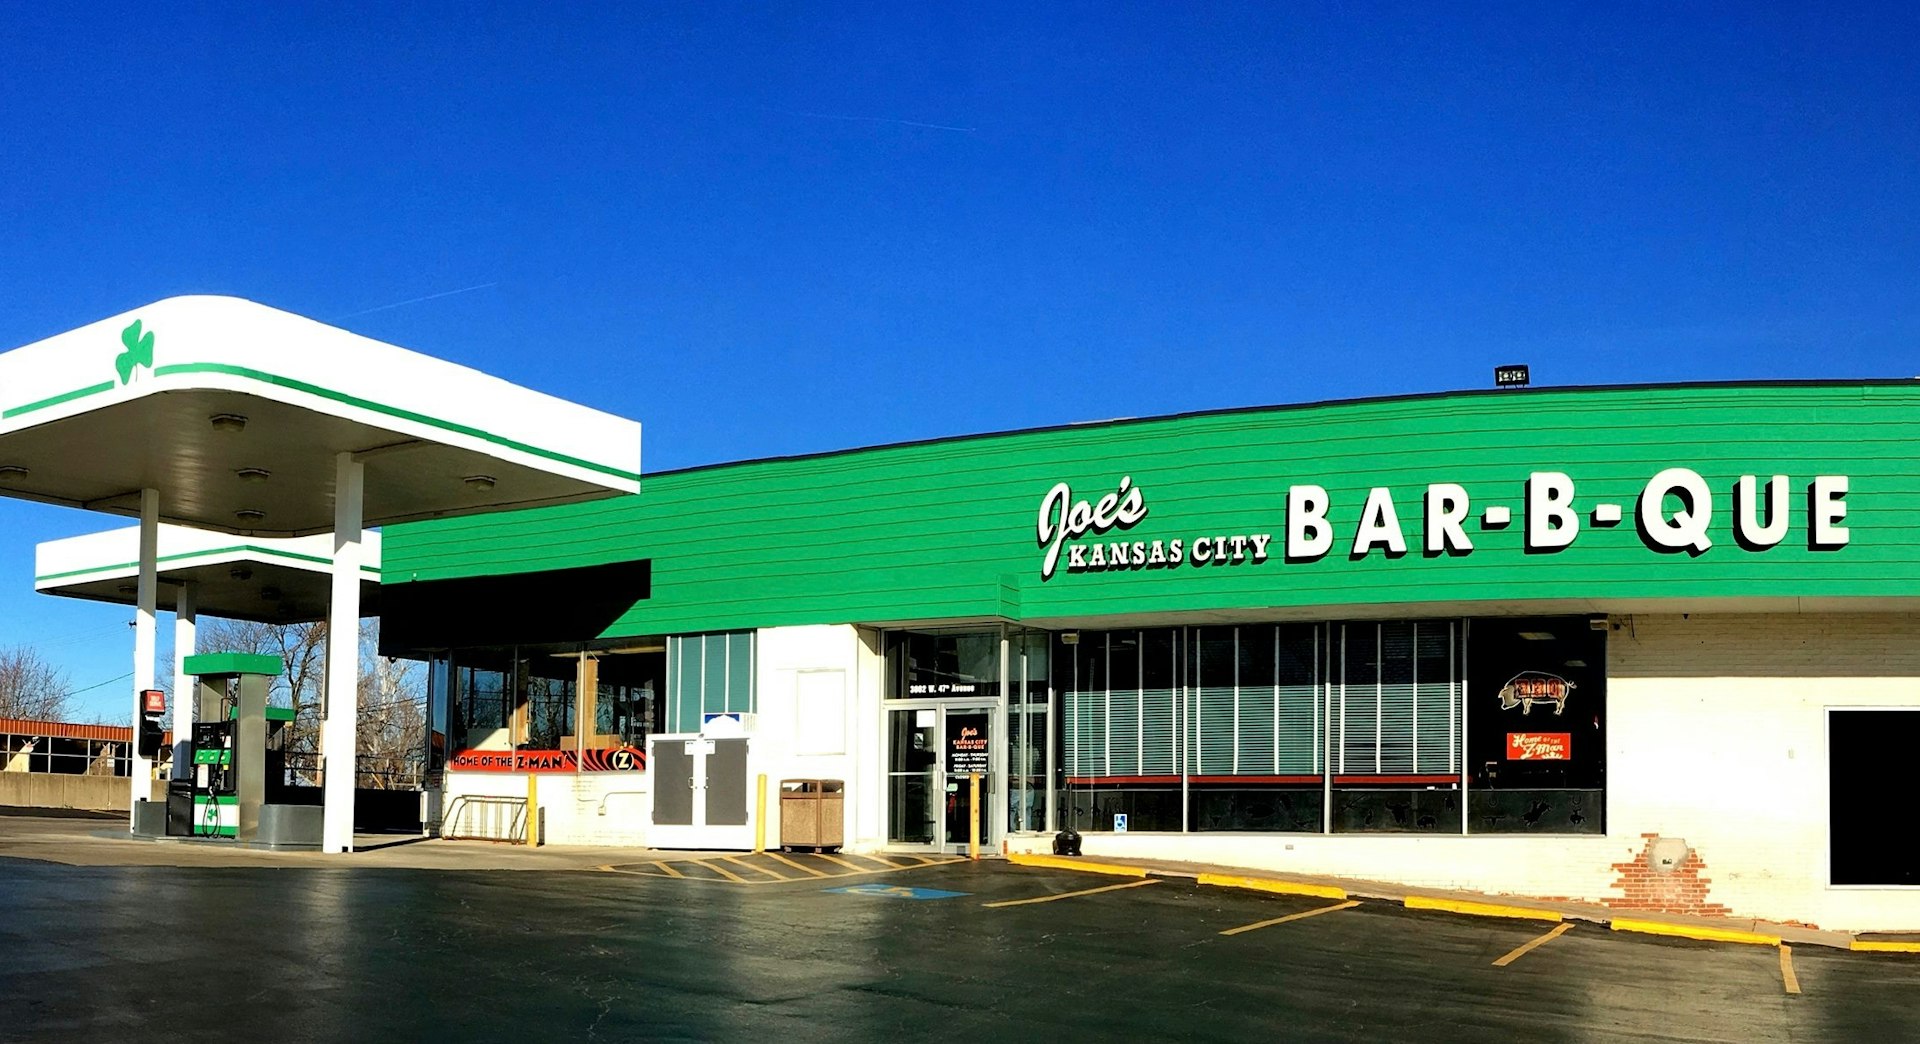 The original gas station location of Joe's Kansas City Bar-B-Que